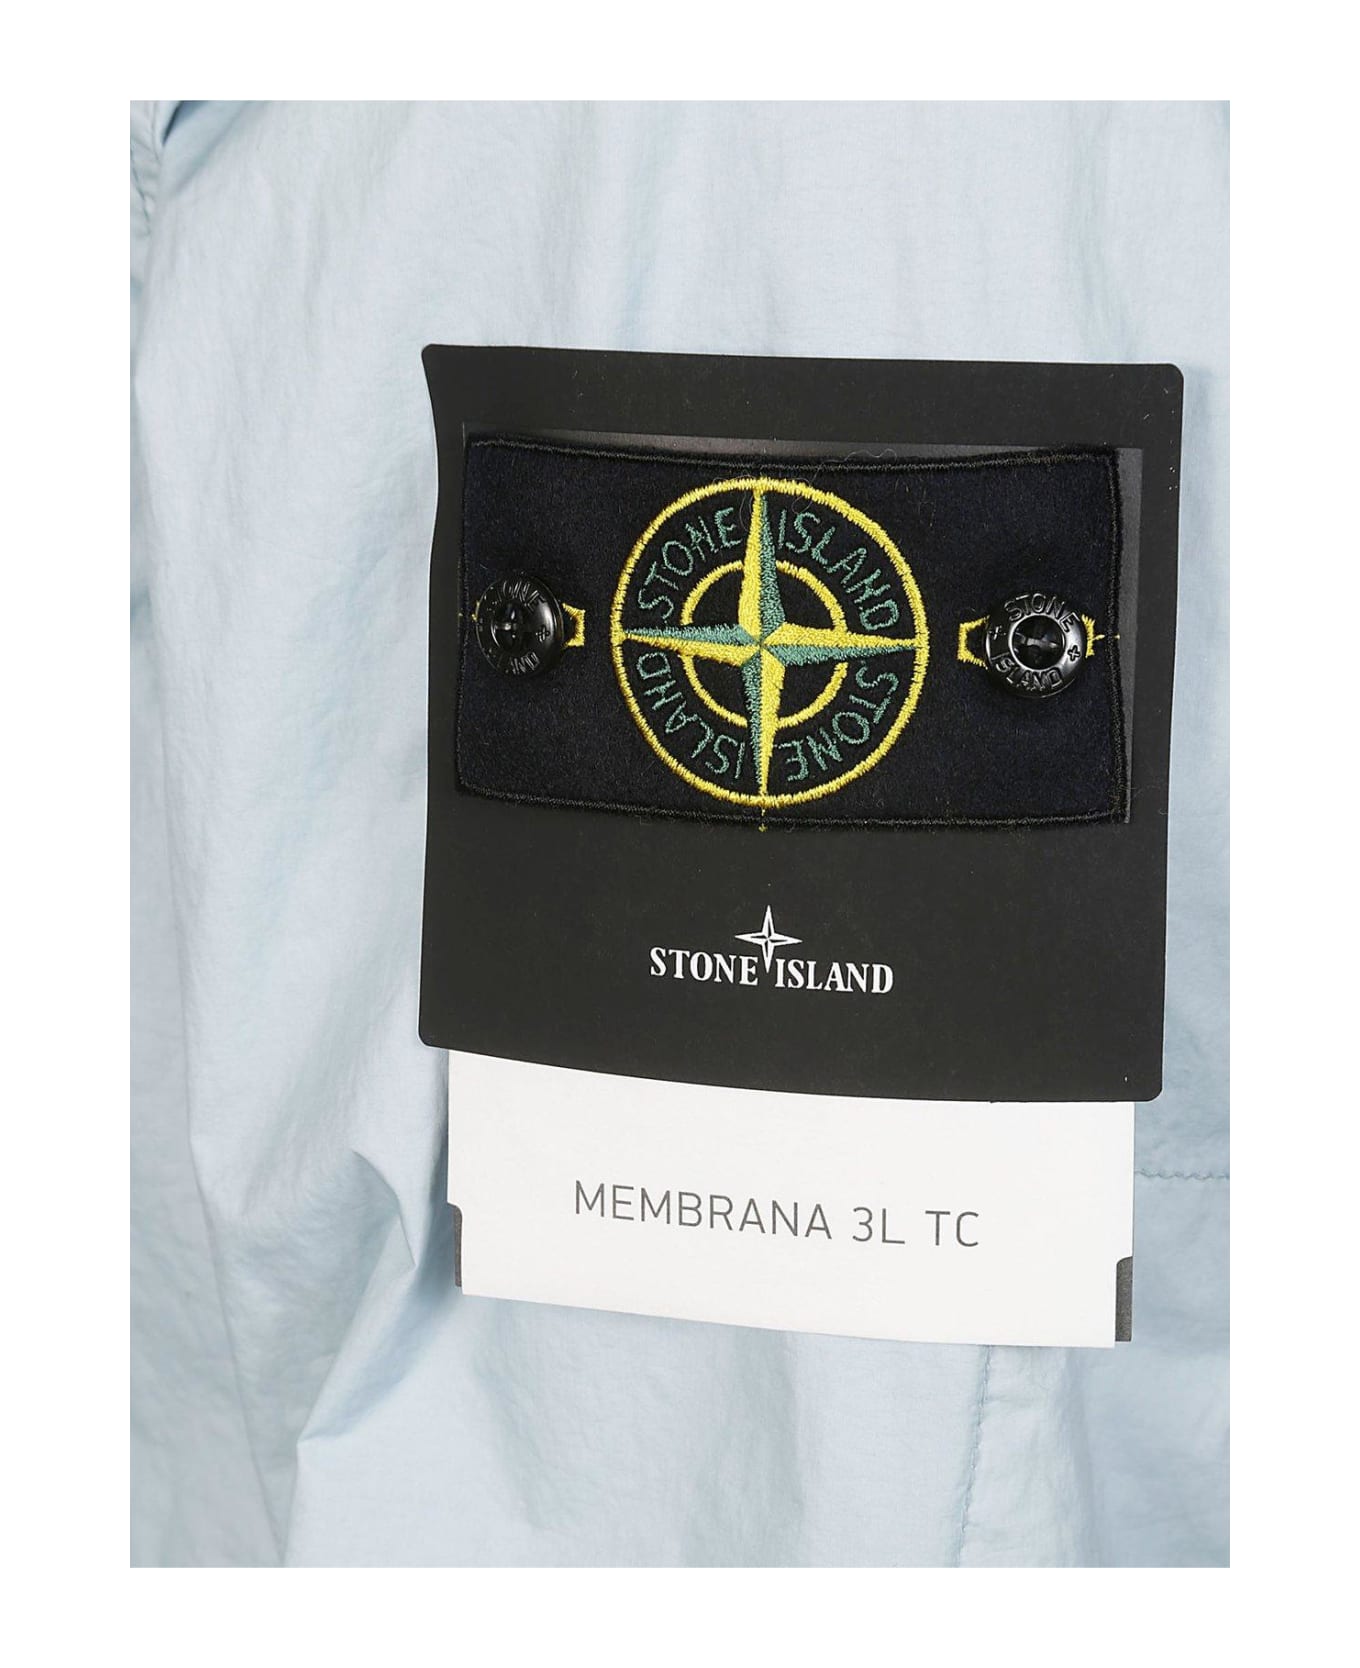 Stone Island Membrana 3l Tc Zipped Hooded Jacket - Azzurro